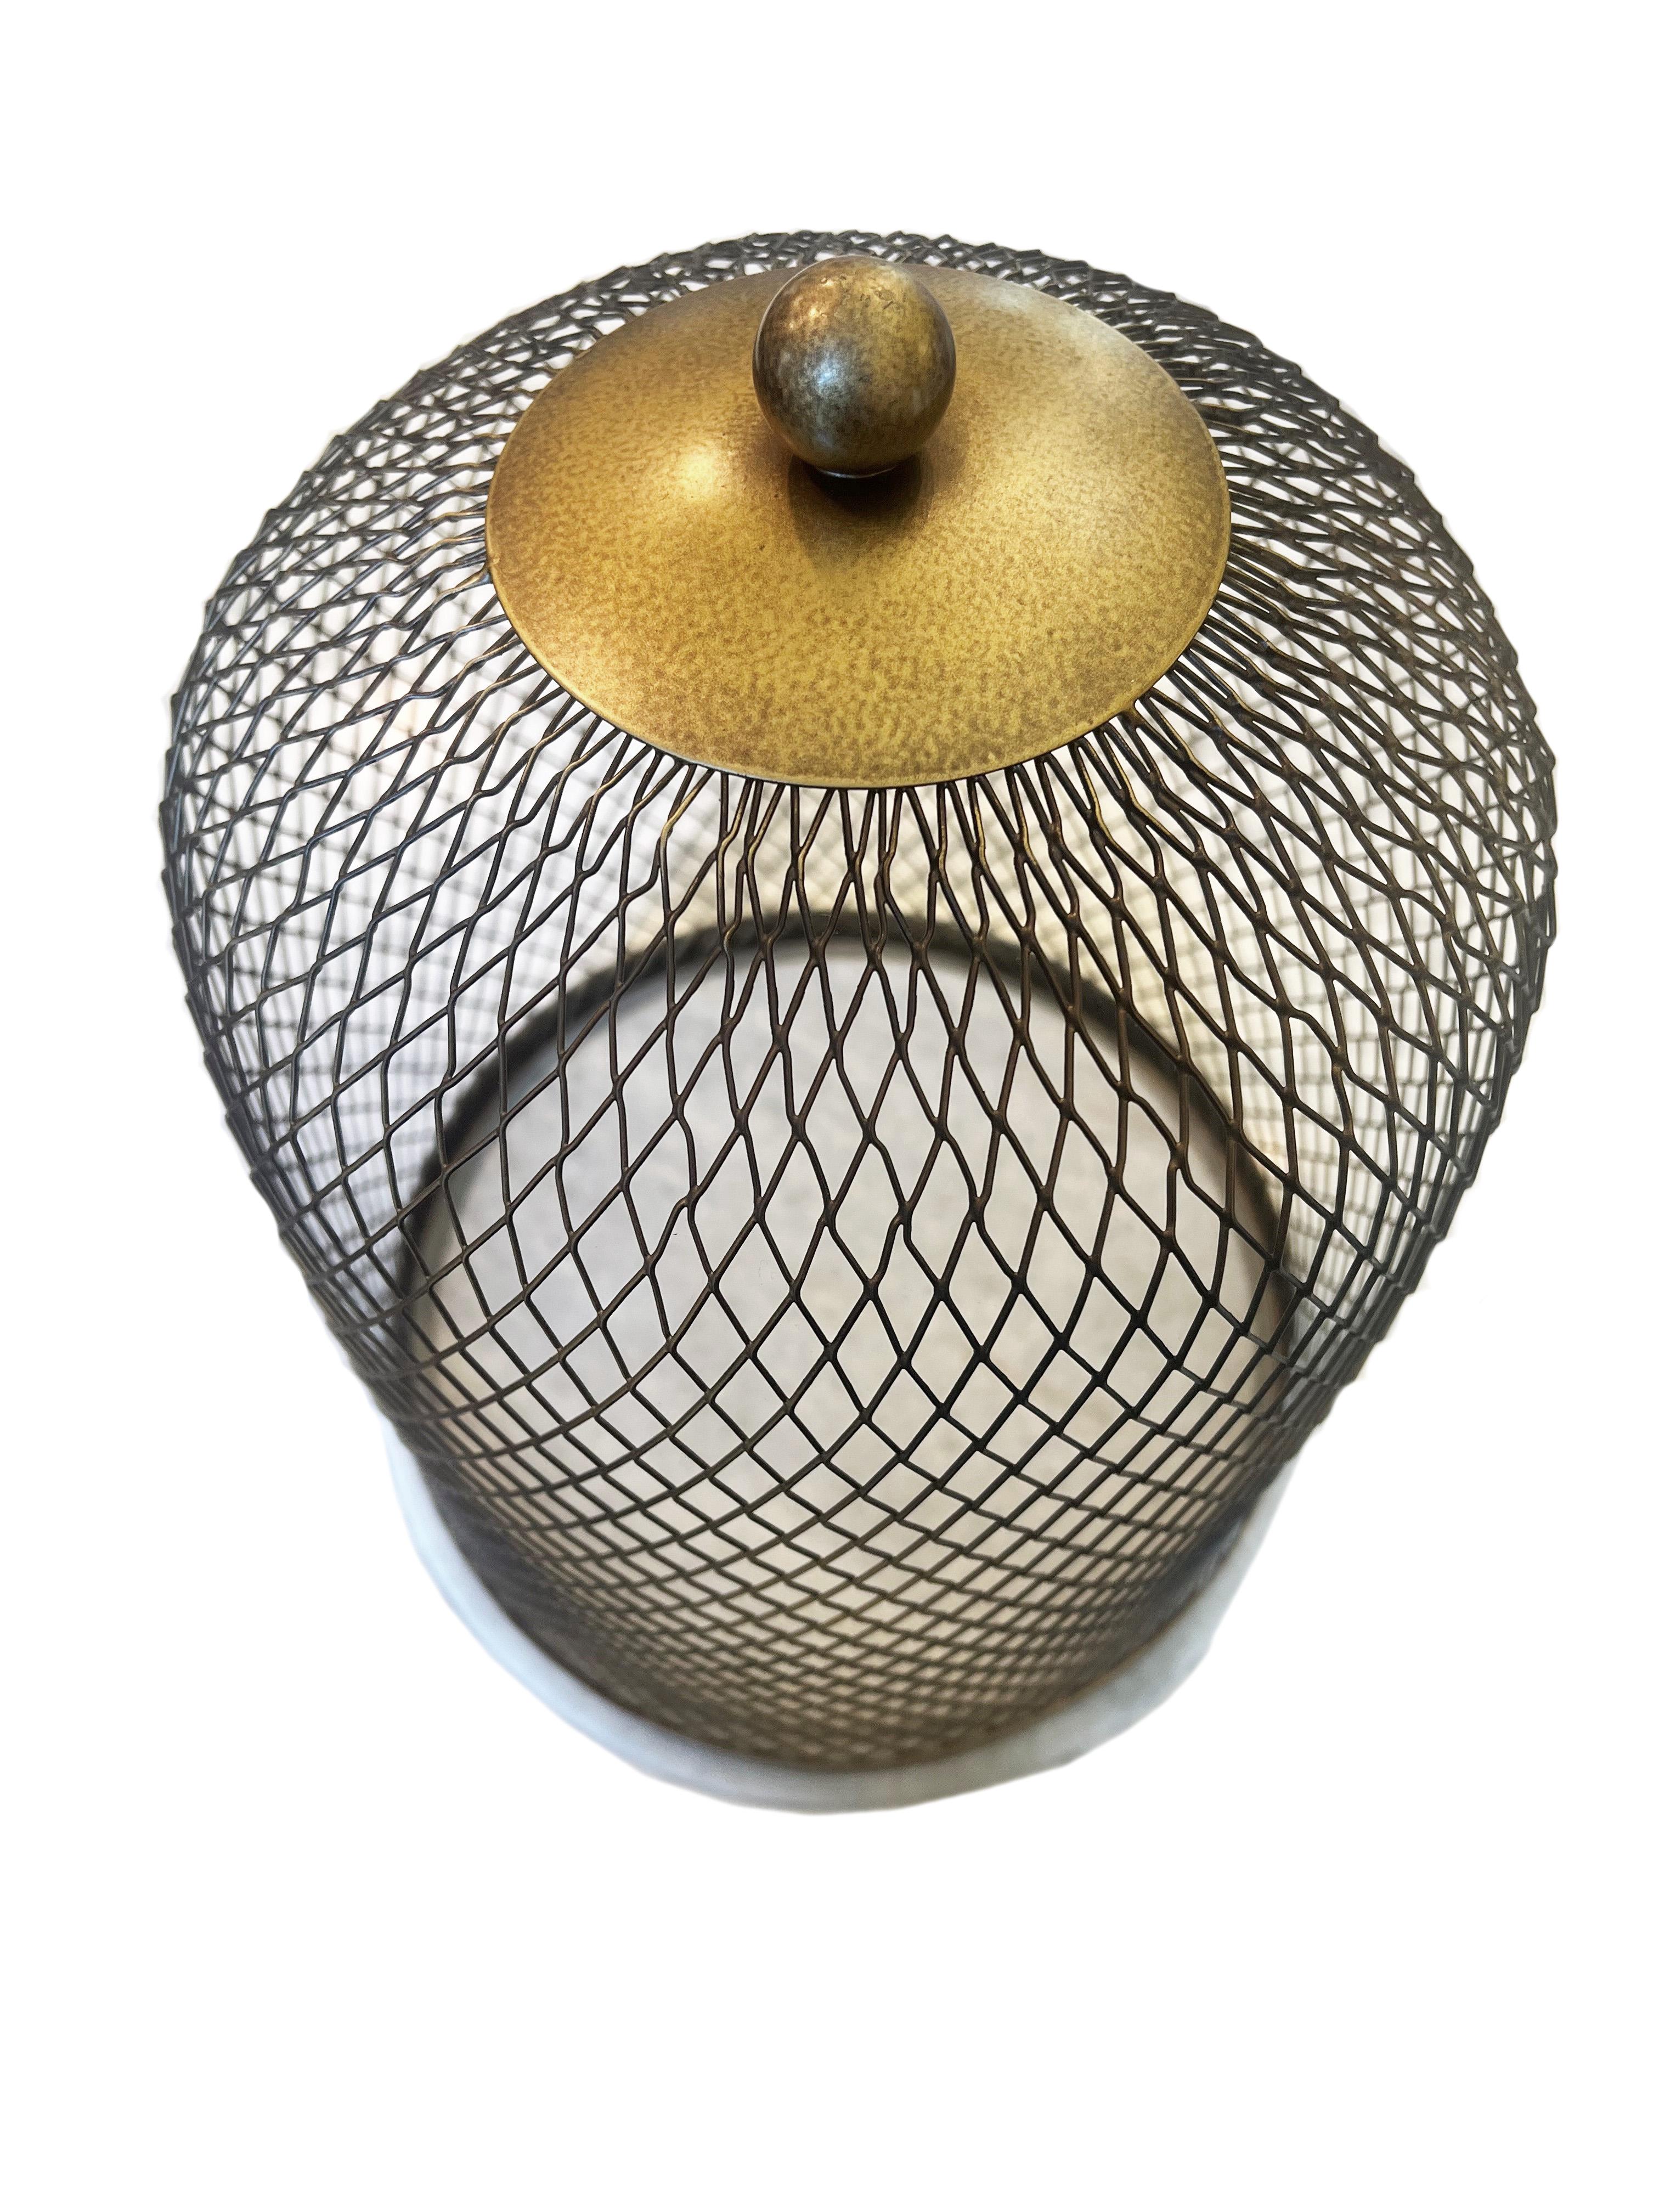 Élevez votre décoration intérieure avec ce cloche en maille de fer exquis, présentant un mélange harmonieux d'utilité et d'élégance. La cloche présente une finition sophistiquée en laiton antique qui dégage un charme chaleureux et vintage,